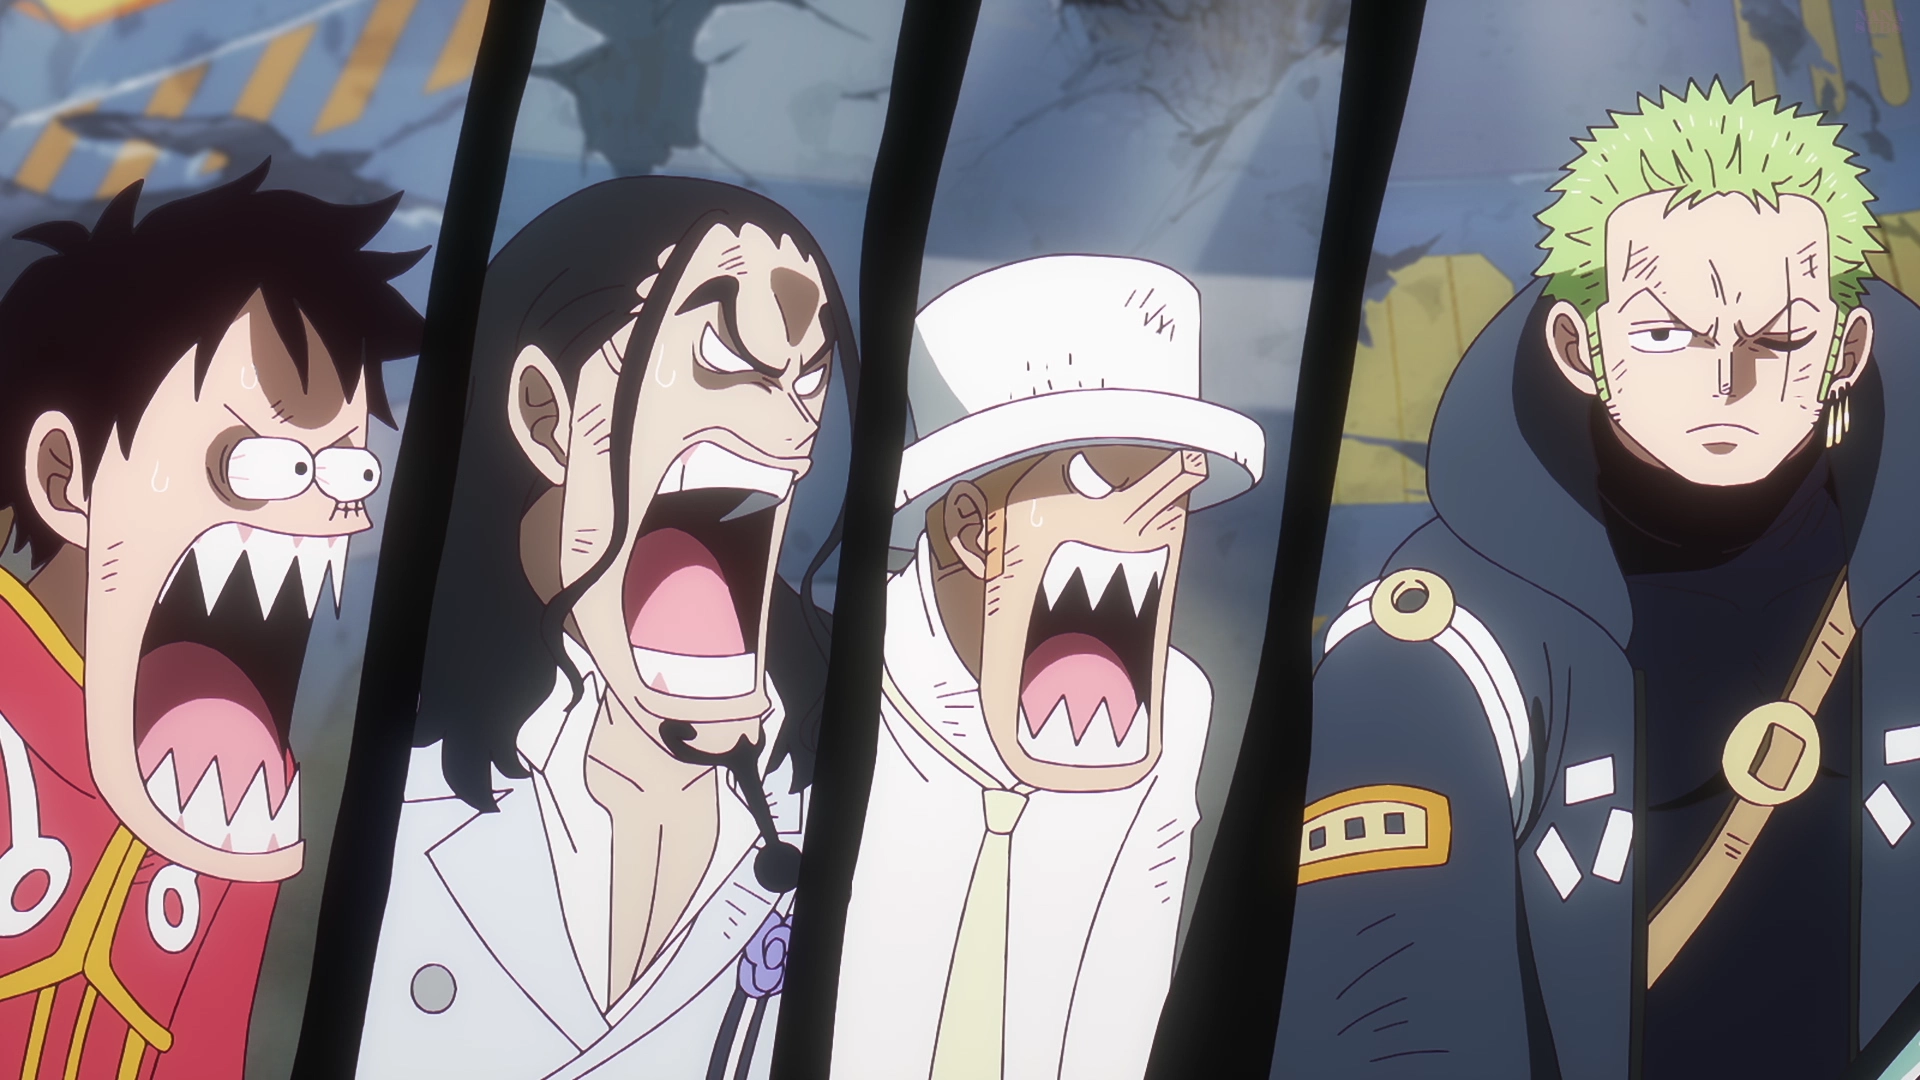 Minaturka 1110 odcinka One Piece